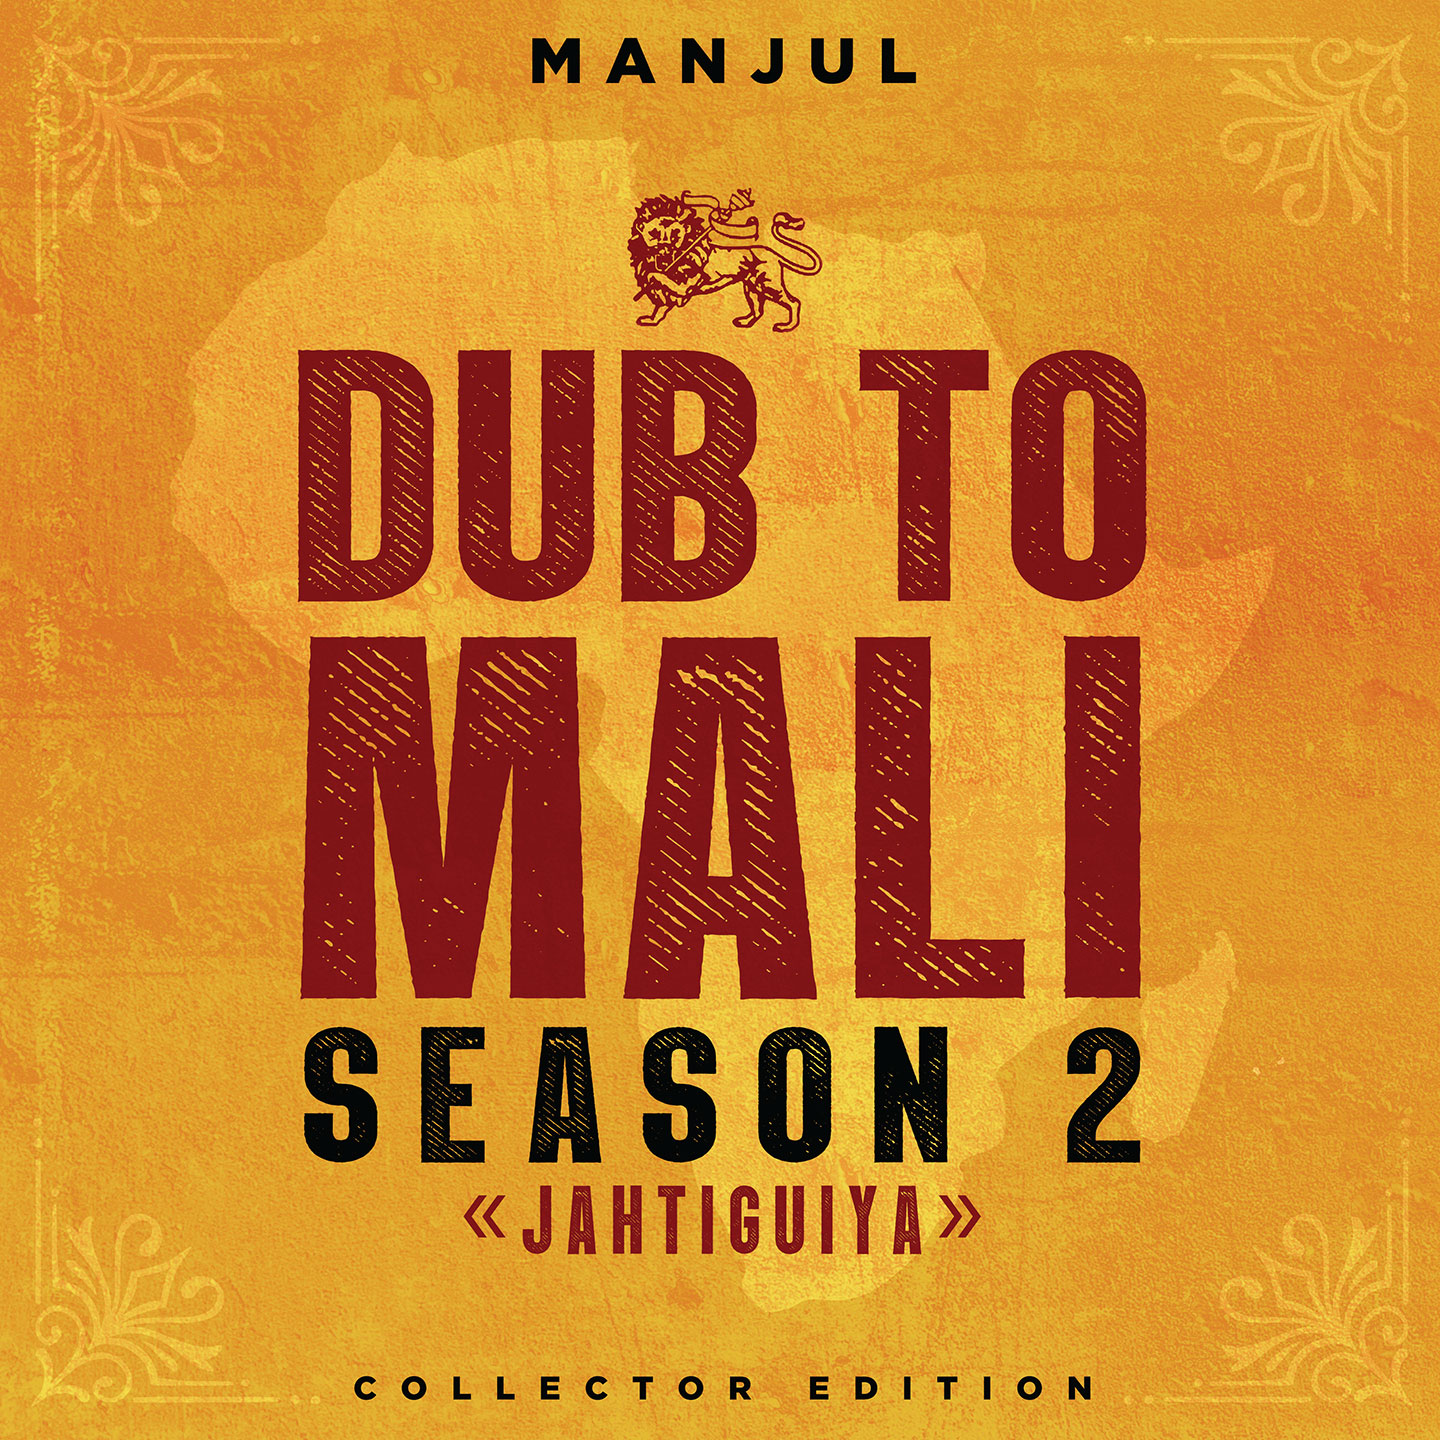 Cover de l'album de Manjul - Dub to Mali - Season 2. Réalisé par Loseou